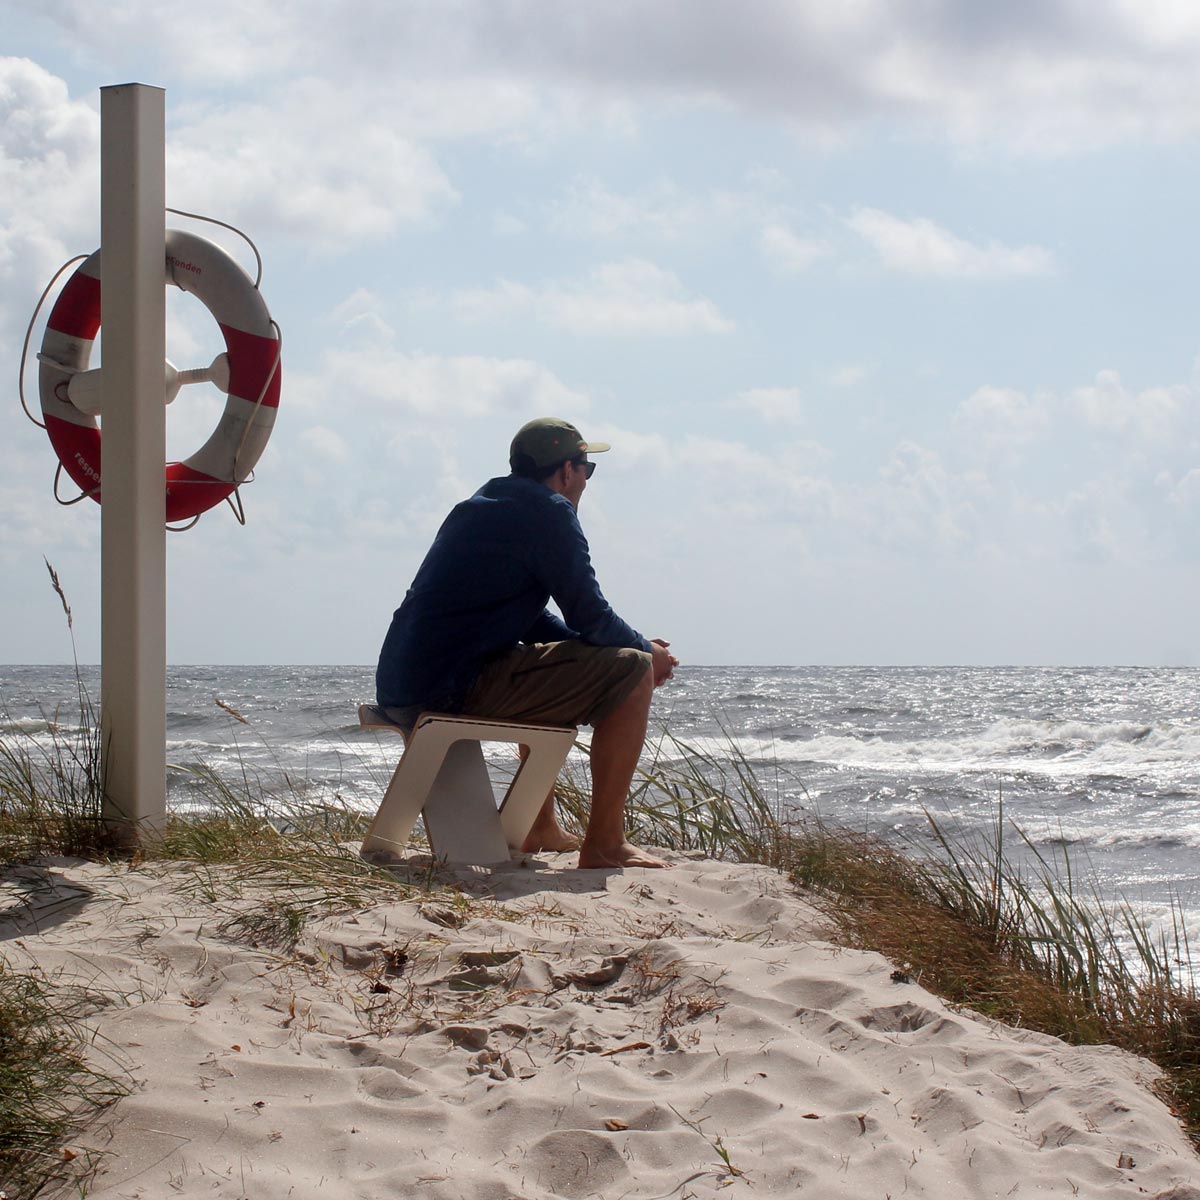 WILJA Klapphocker Karl faltbar aus Holz mit Seil in dunkelblau outdoor unterwegs sitzend am Strand